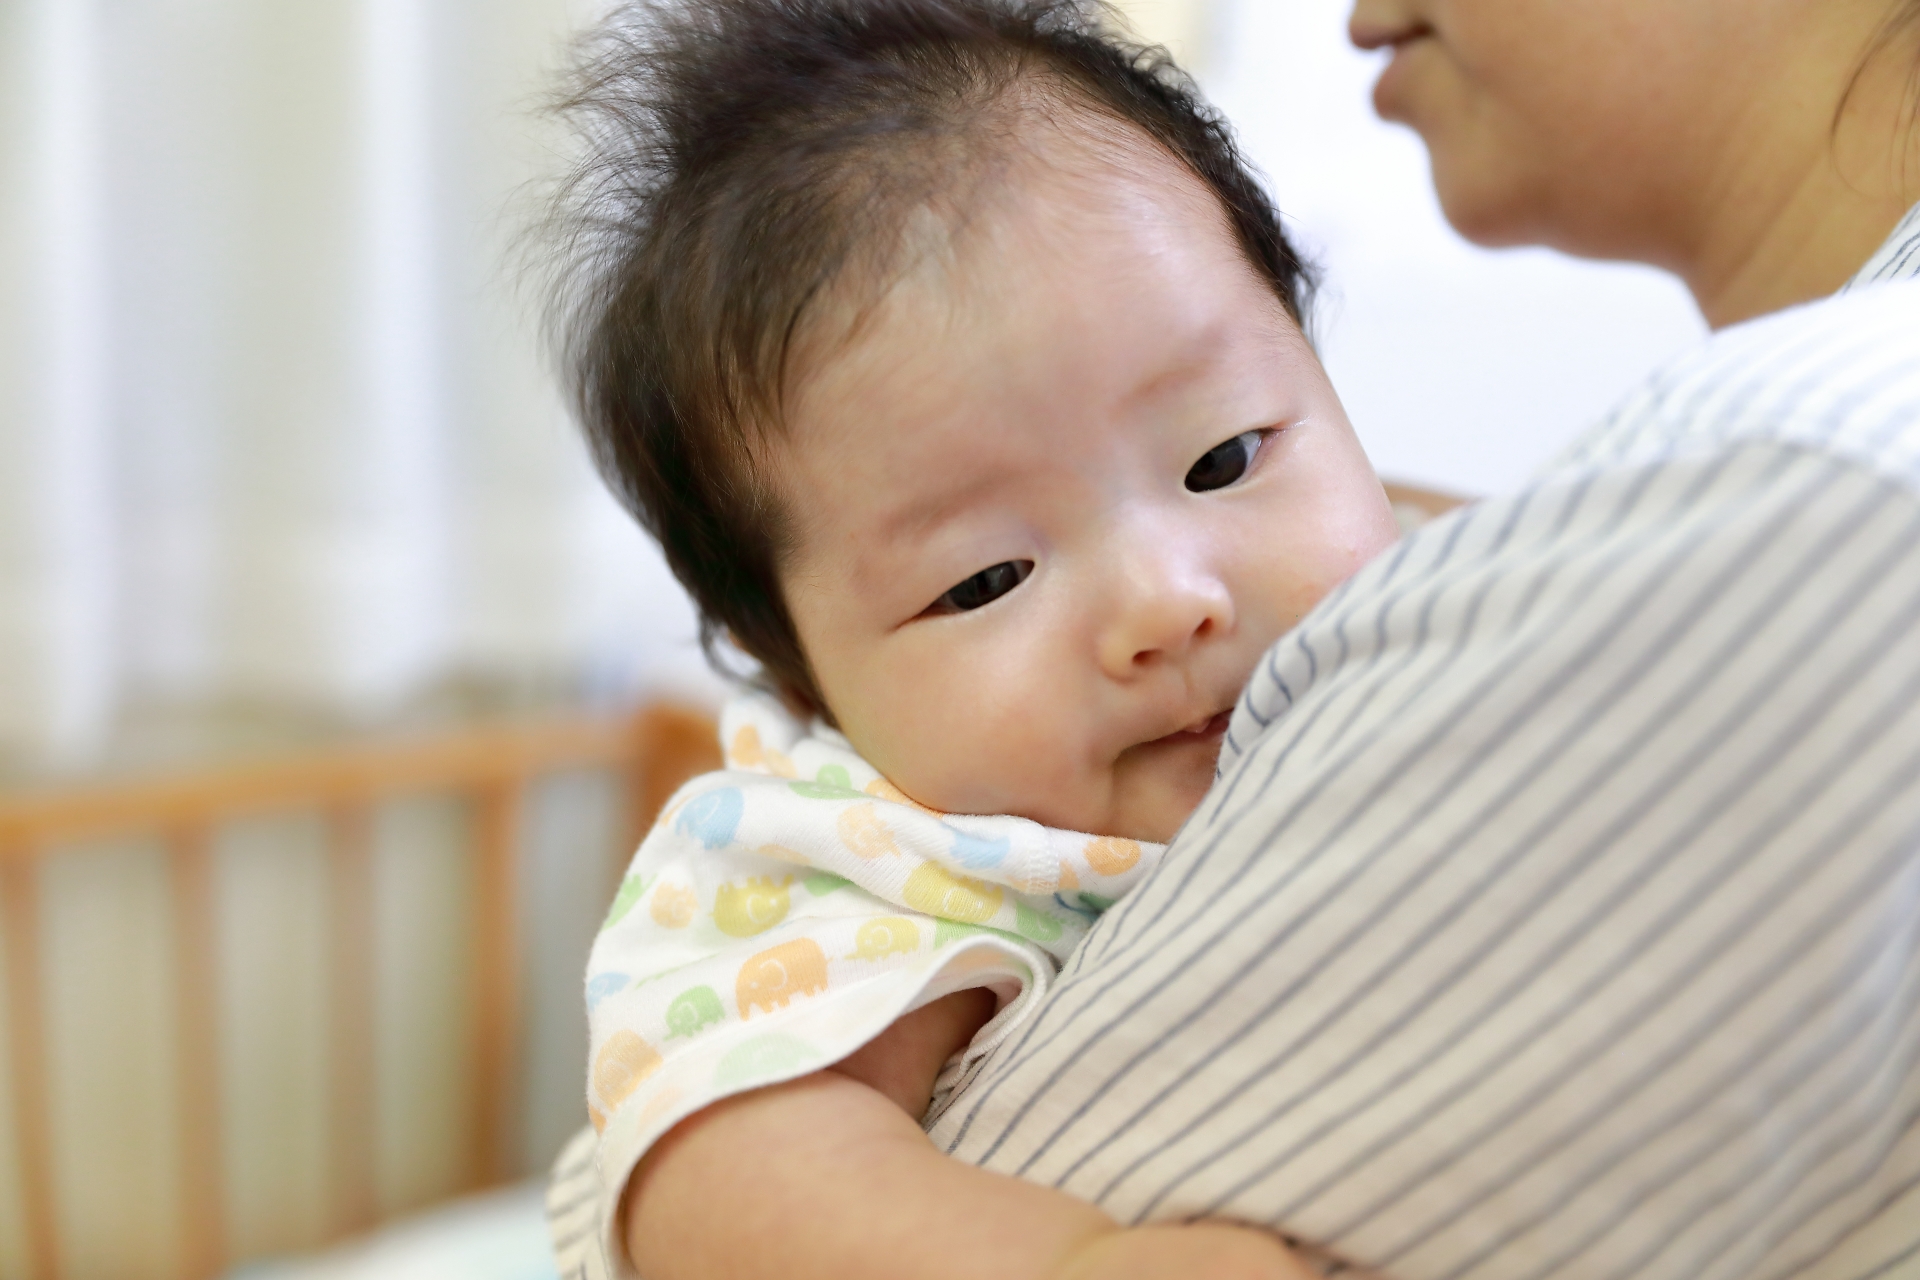 3ヶ月の赤ちゃんの抱っこは横抱きか縦抱きか。そのコツや注意点